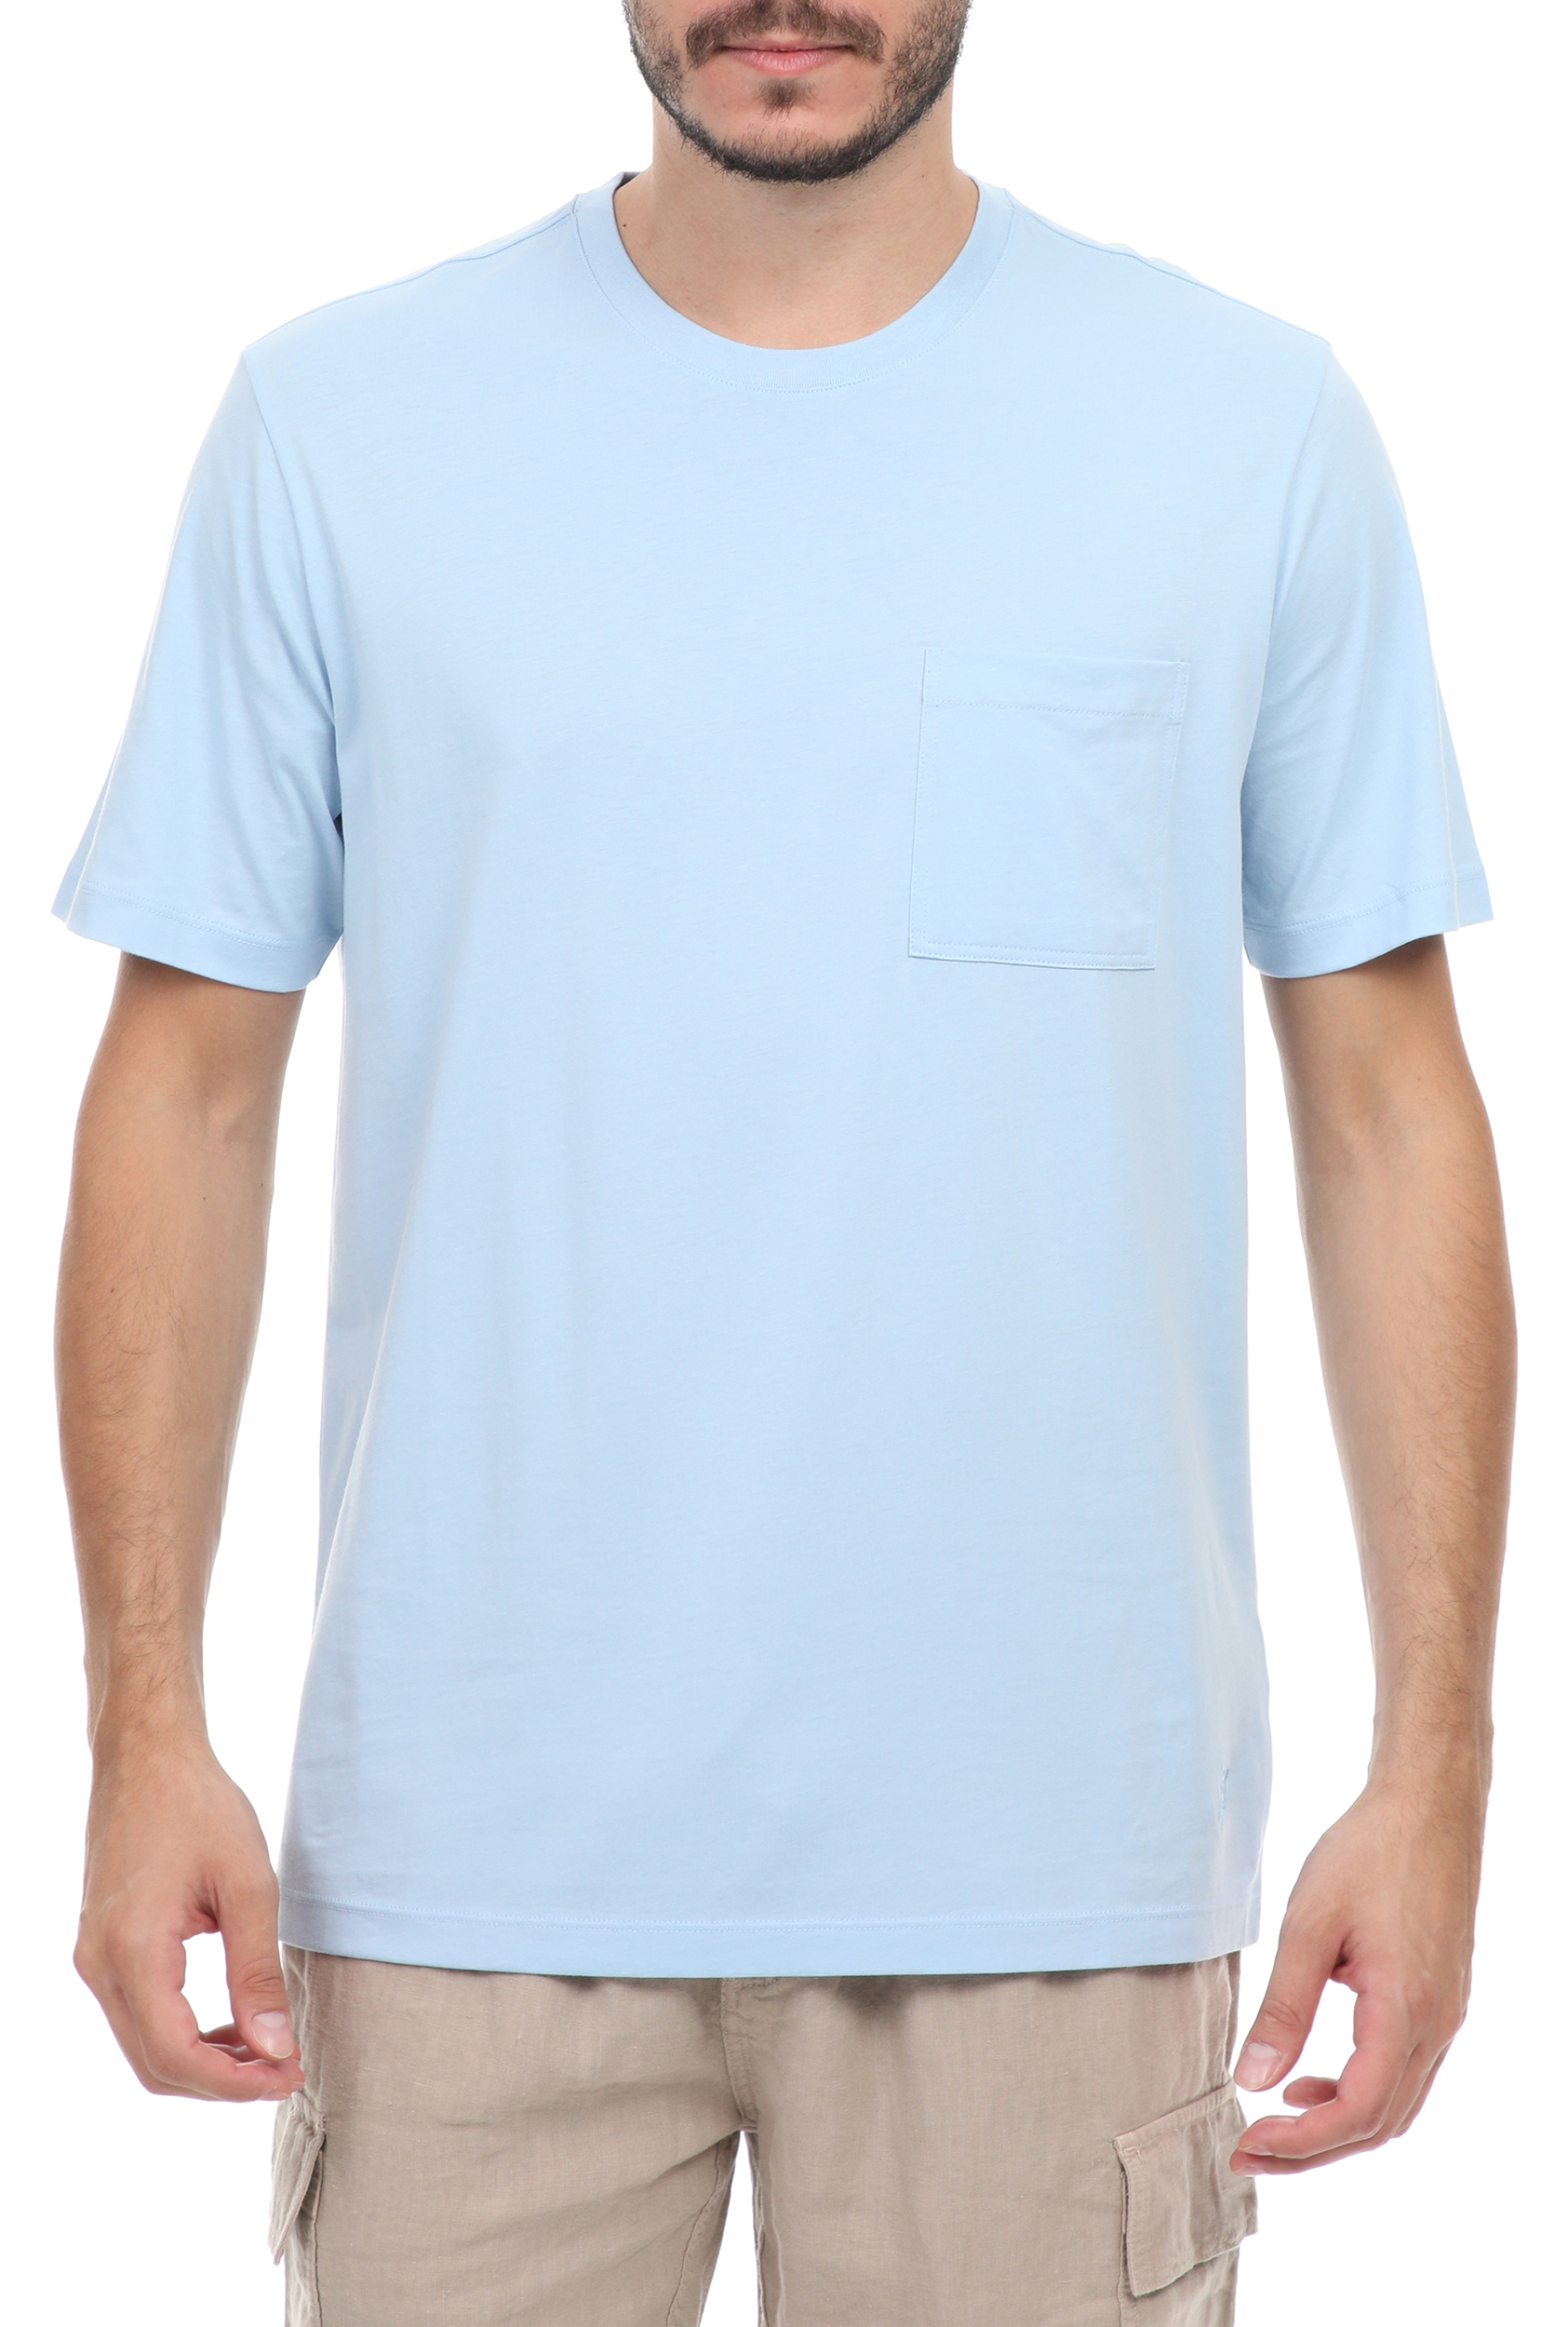 Ανδρικά/Ρούχα/Μπλούζες/Κοντομάνικες VILEBREQUIN - Ανδρικό t-shirt VILEBREQUIN TEEGUS μπλε